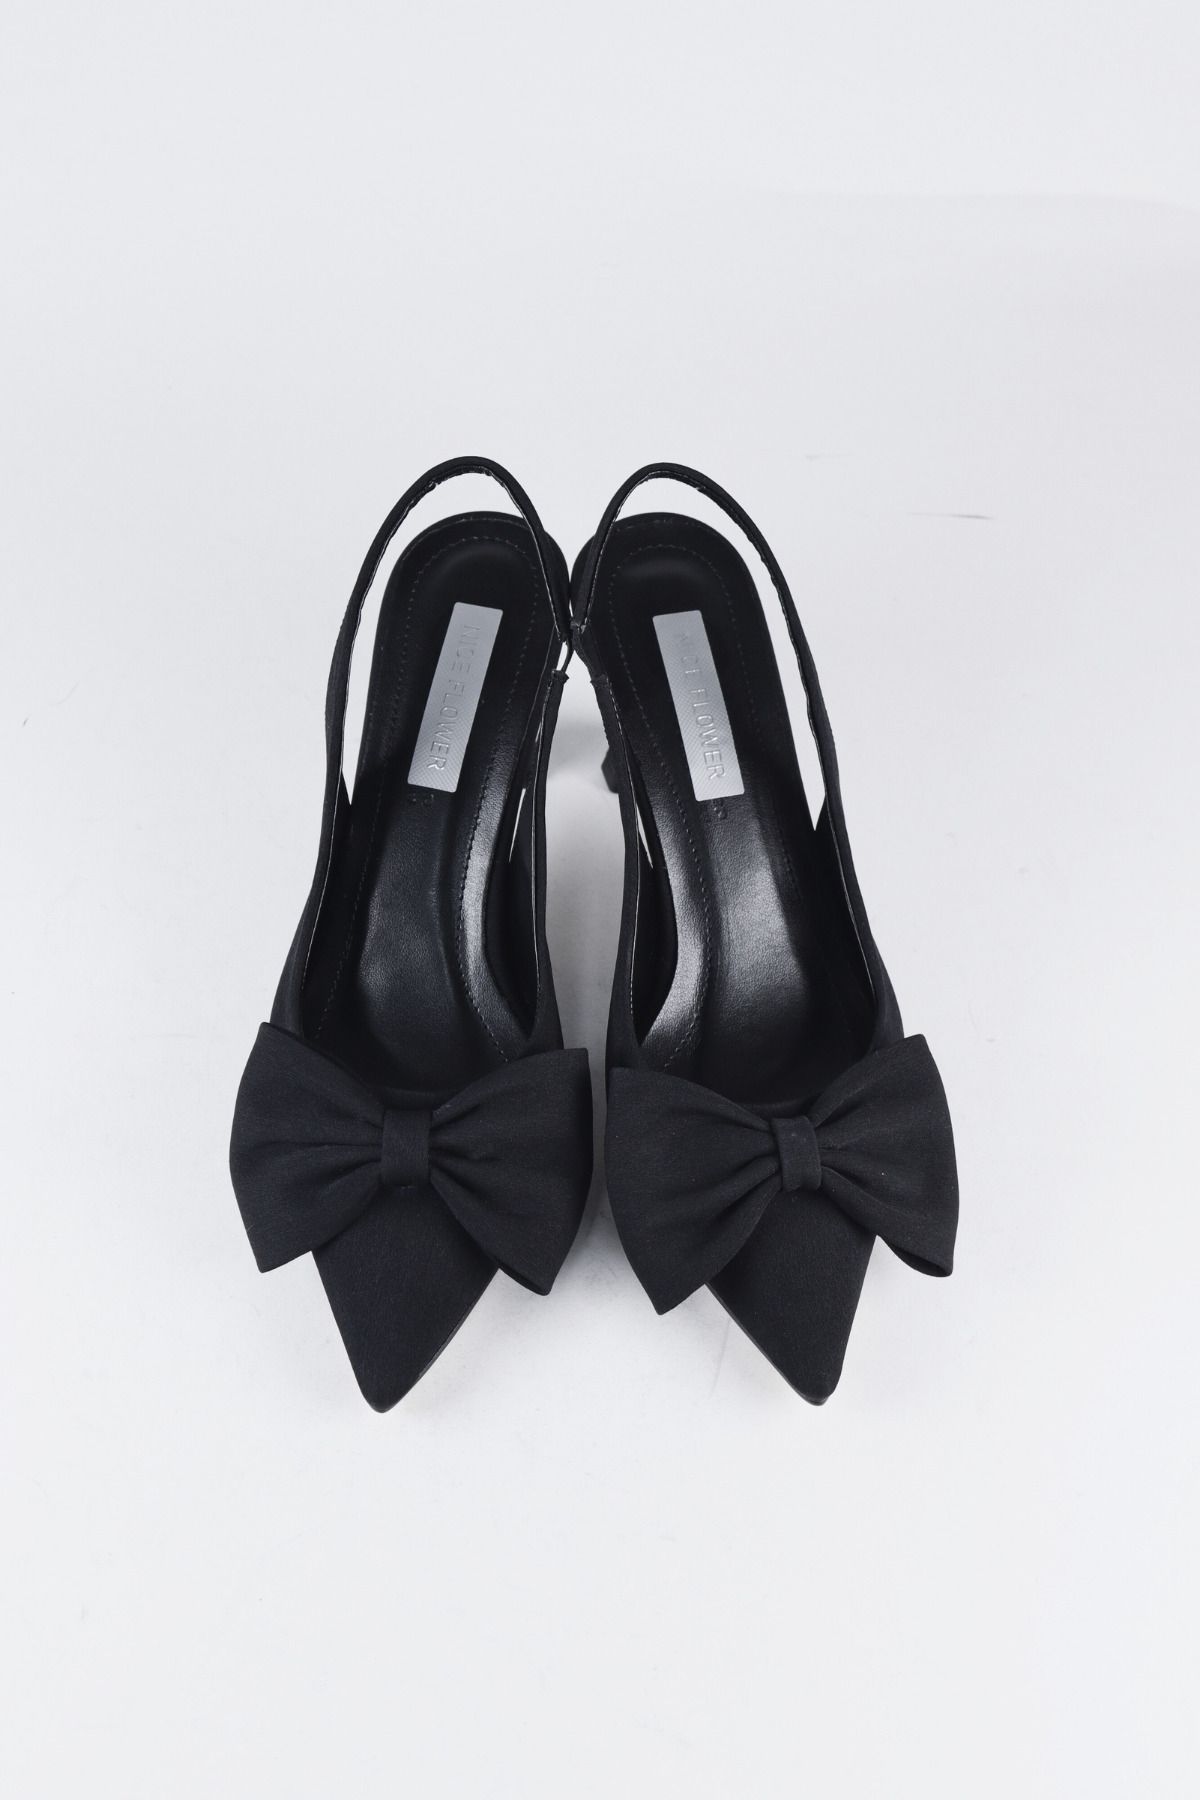 NiceDiffer Kadın Fiyonk Abiye Siyah Kumaş Topuklu Ayakkabı 7cm Topuklu